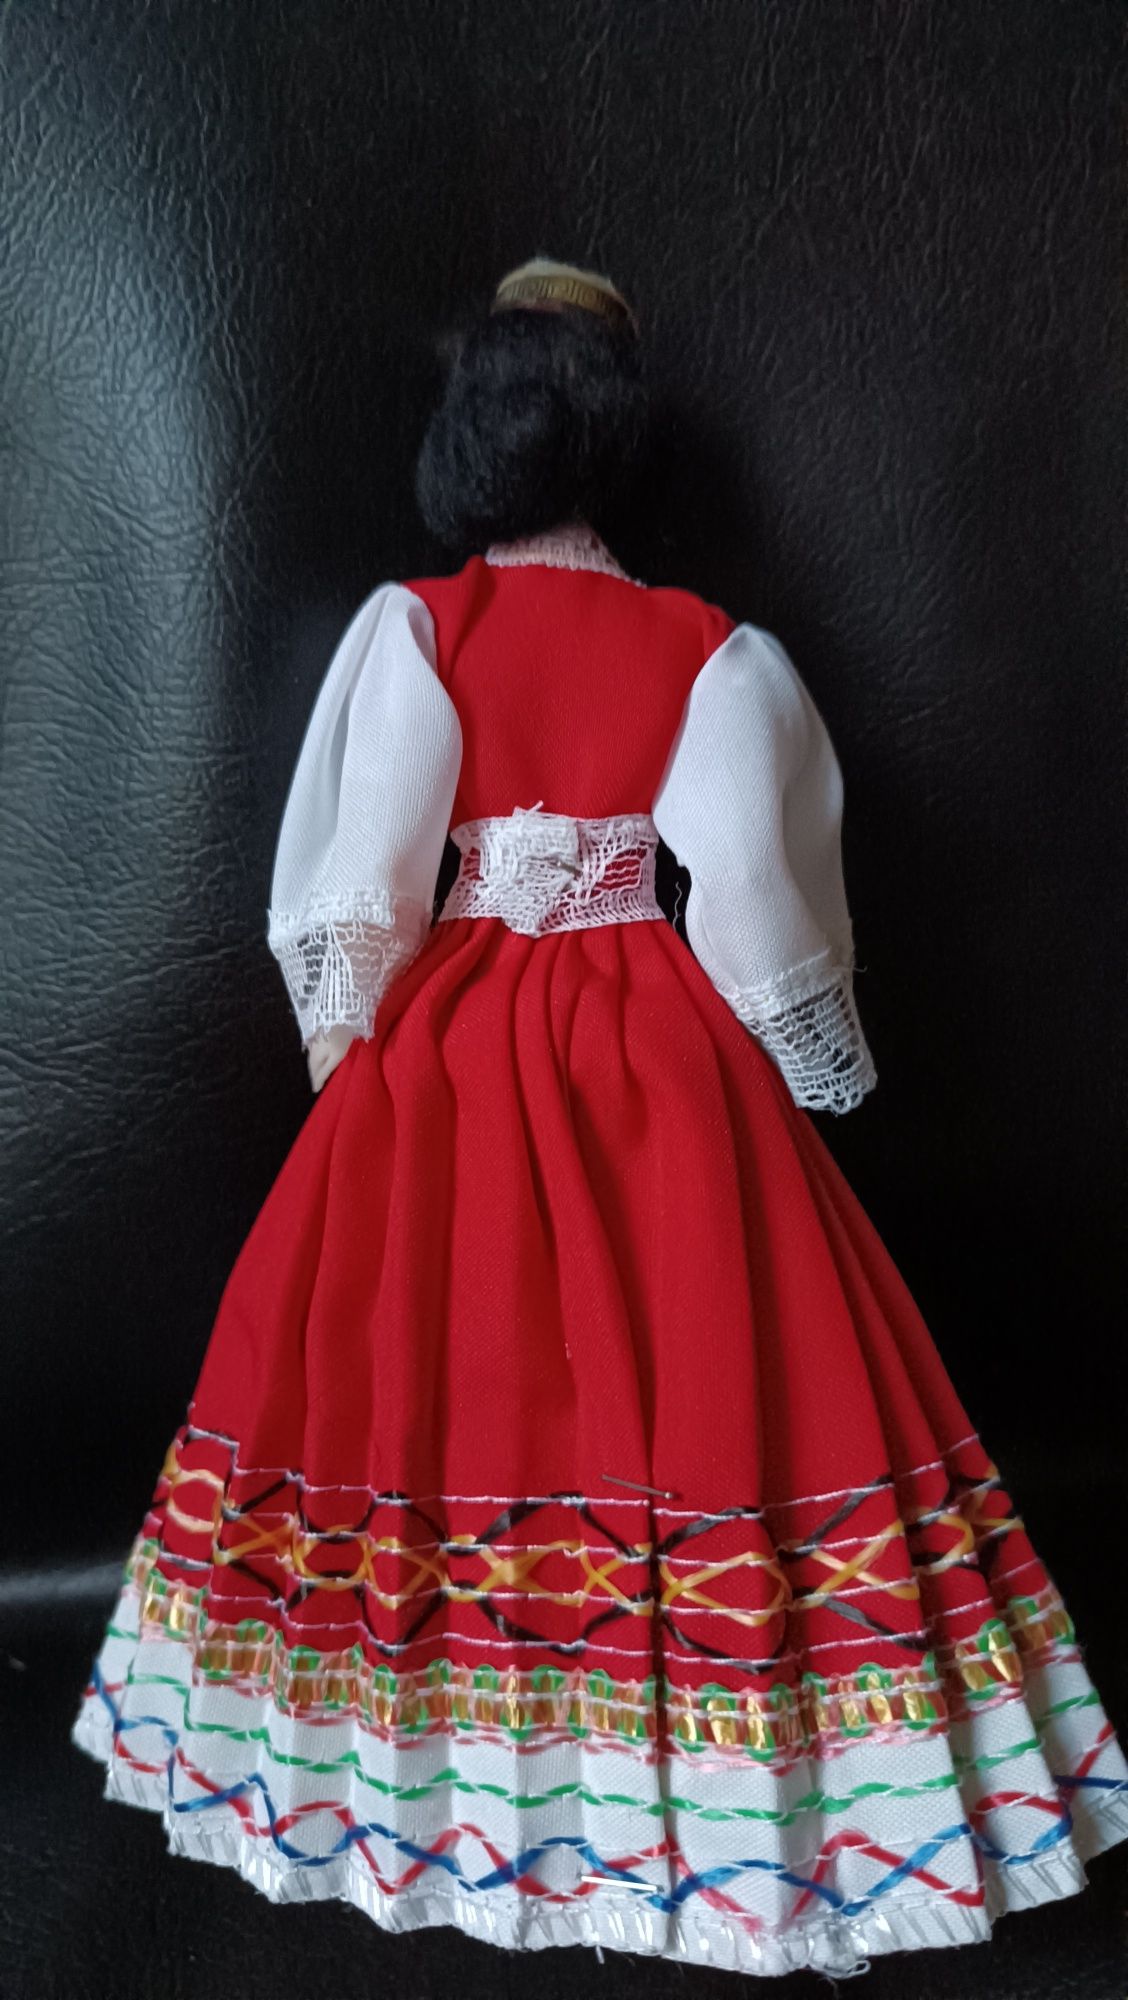 Kolekcjonerska lalka w tradycyjnym stroju greckim